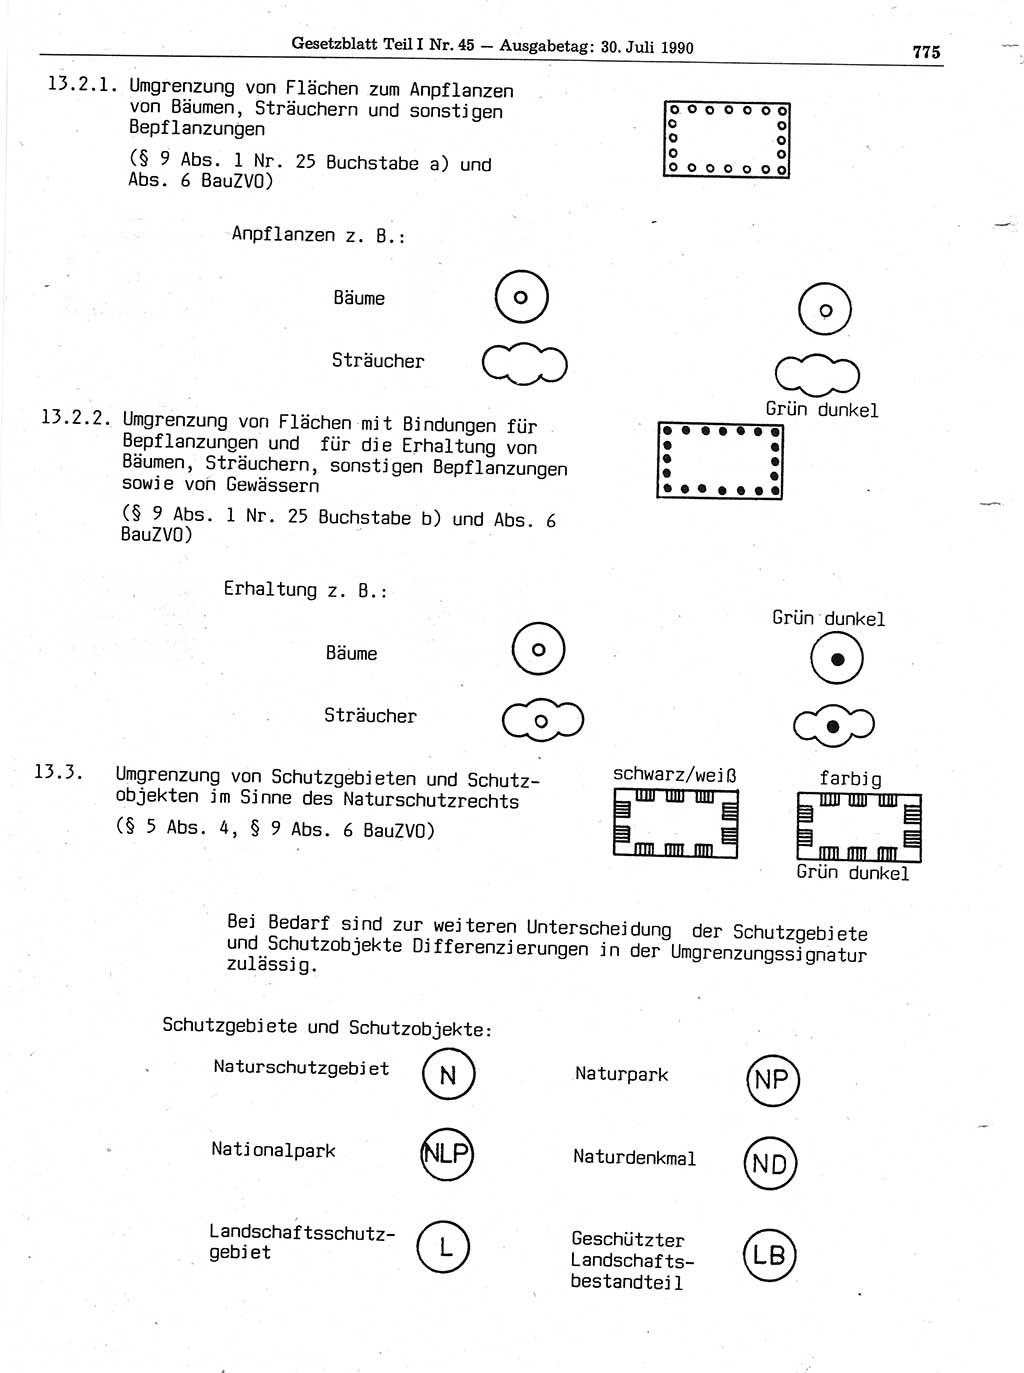 Gesetzblatt (GBl.) der Deutschen Demokratischen Republik (DDR) Teil Ⅰ 1990, Seite 775 (GBl. DDR Ⅰ 1990, S. 775)